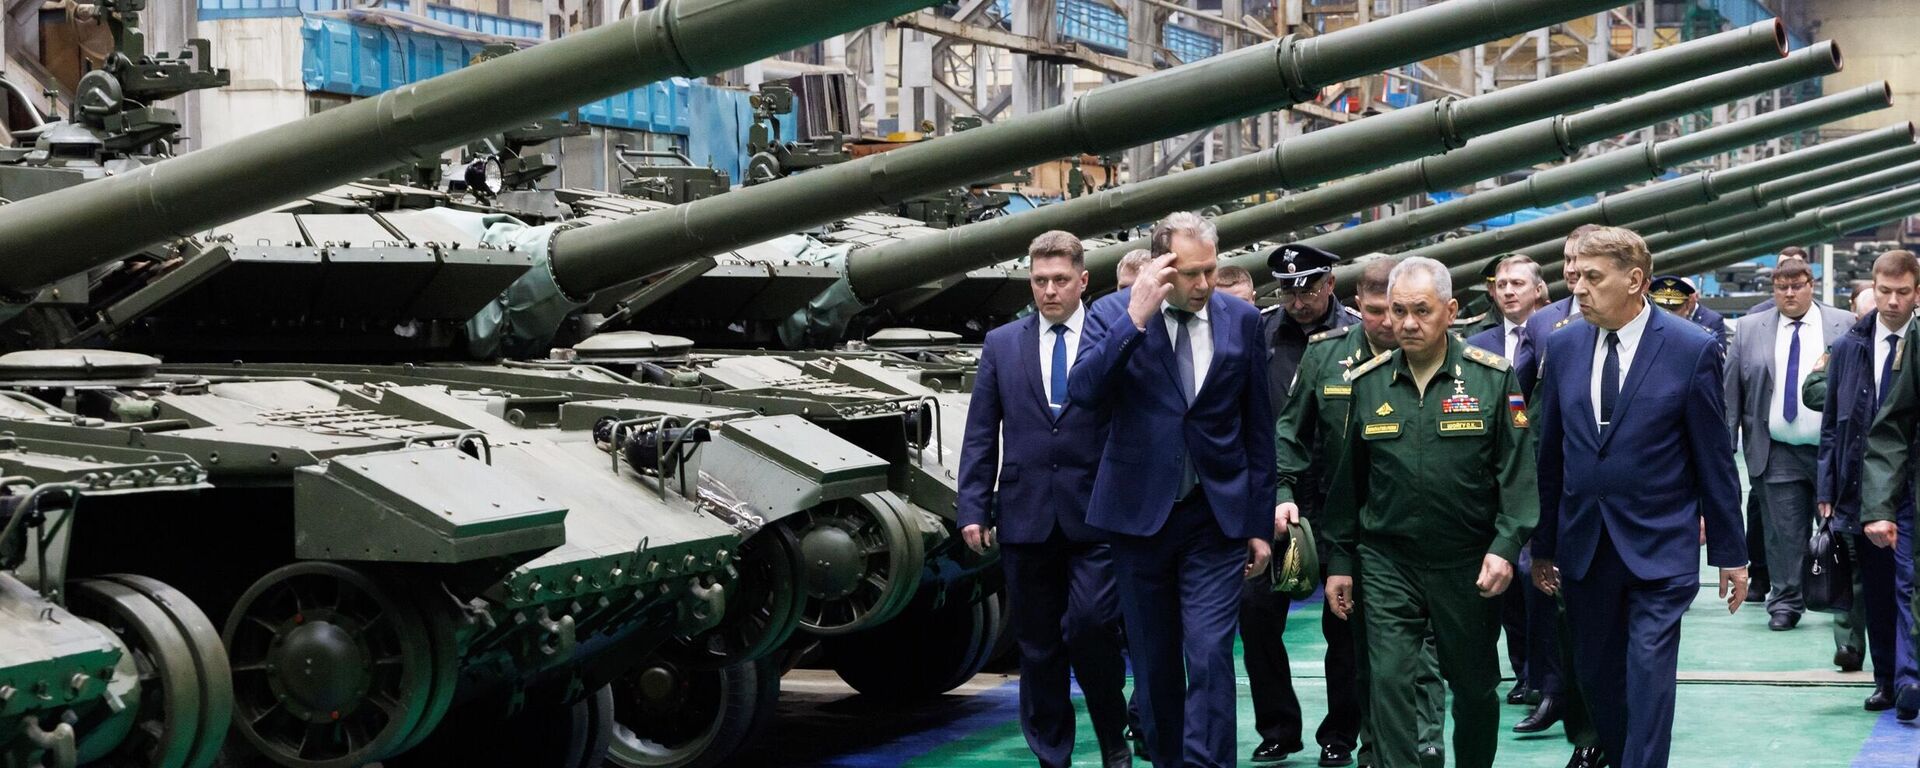 El ministro de Defensa ruso, Serguéi Shoigú, inspeccionó el cumplimiento del pedido de defensa estatal por parte de una empresa de defensa de la región rusa de Omsk, el 19 de abril de 2024 - Sputnik Mundo, 1920, 19.04.2024